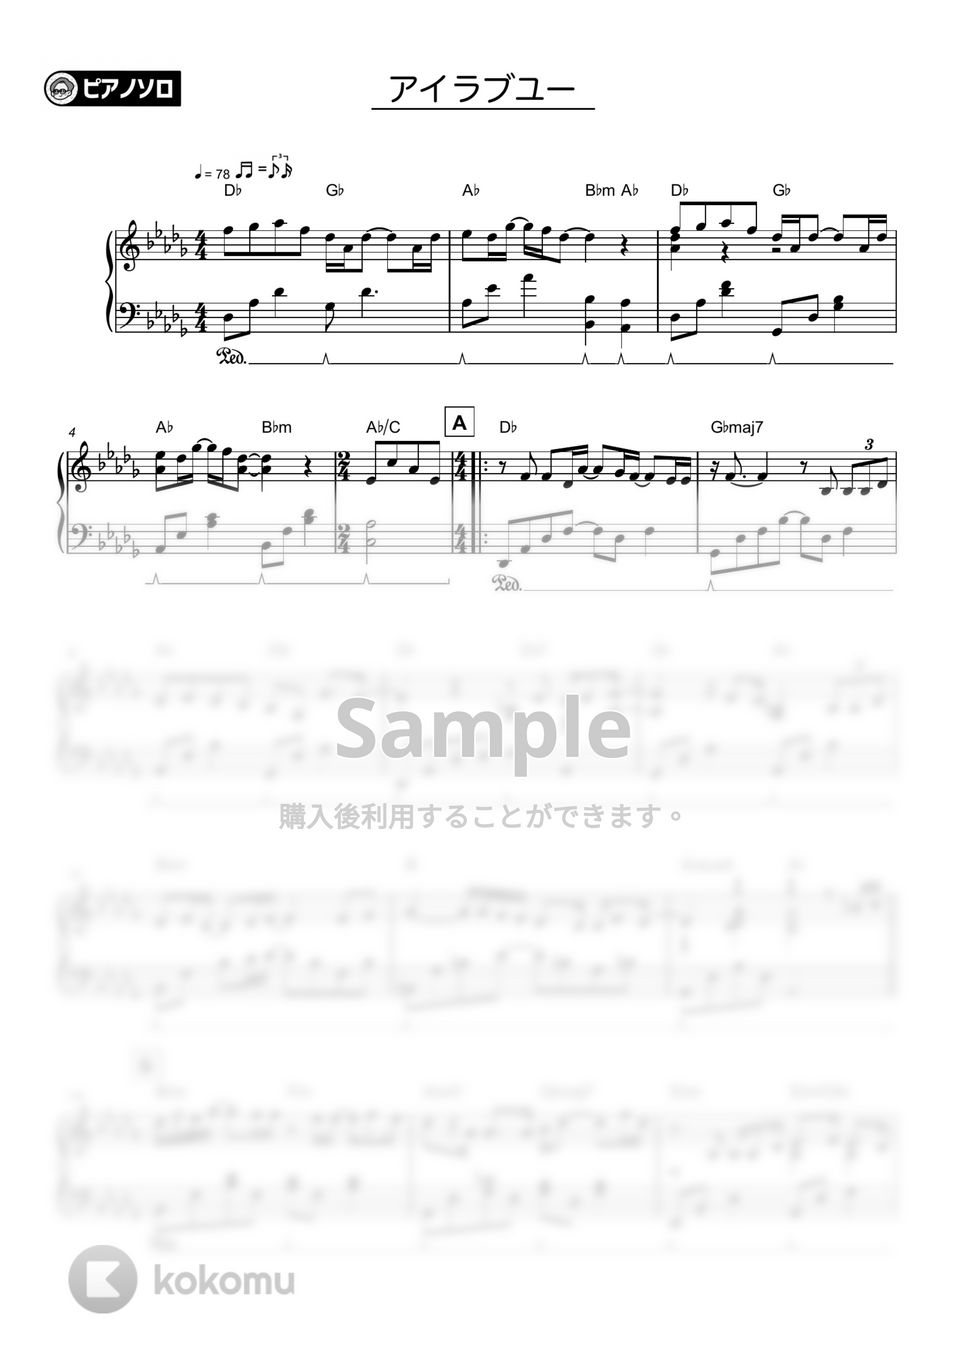 backnumber - アイラブユー by シータピアノ